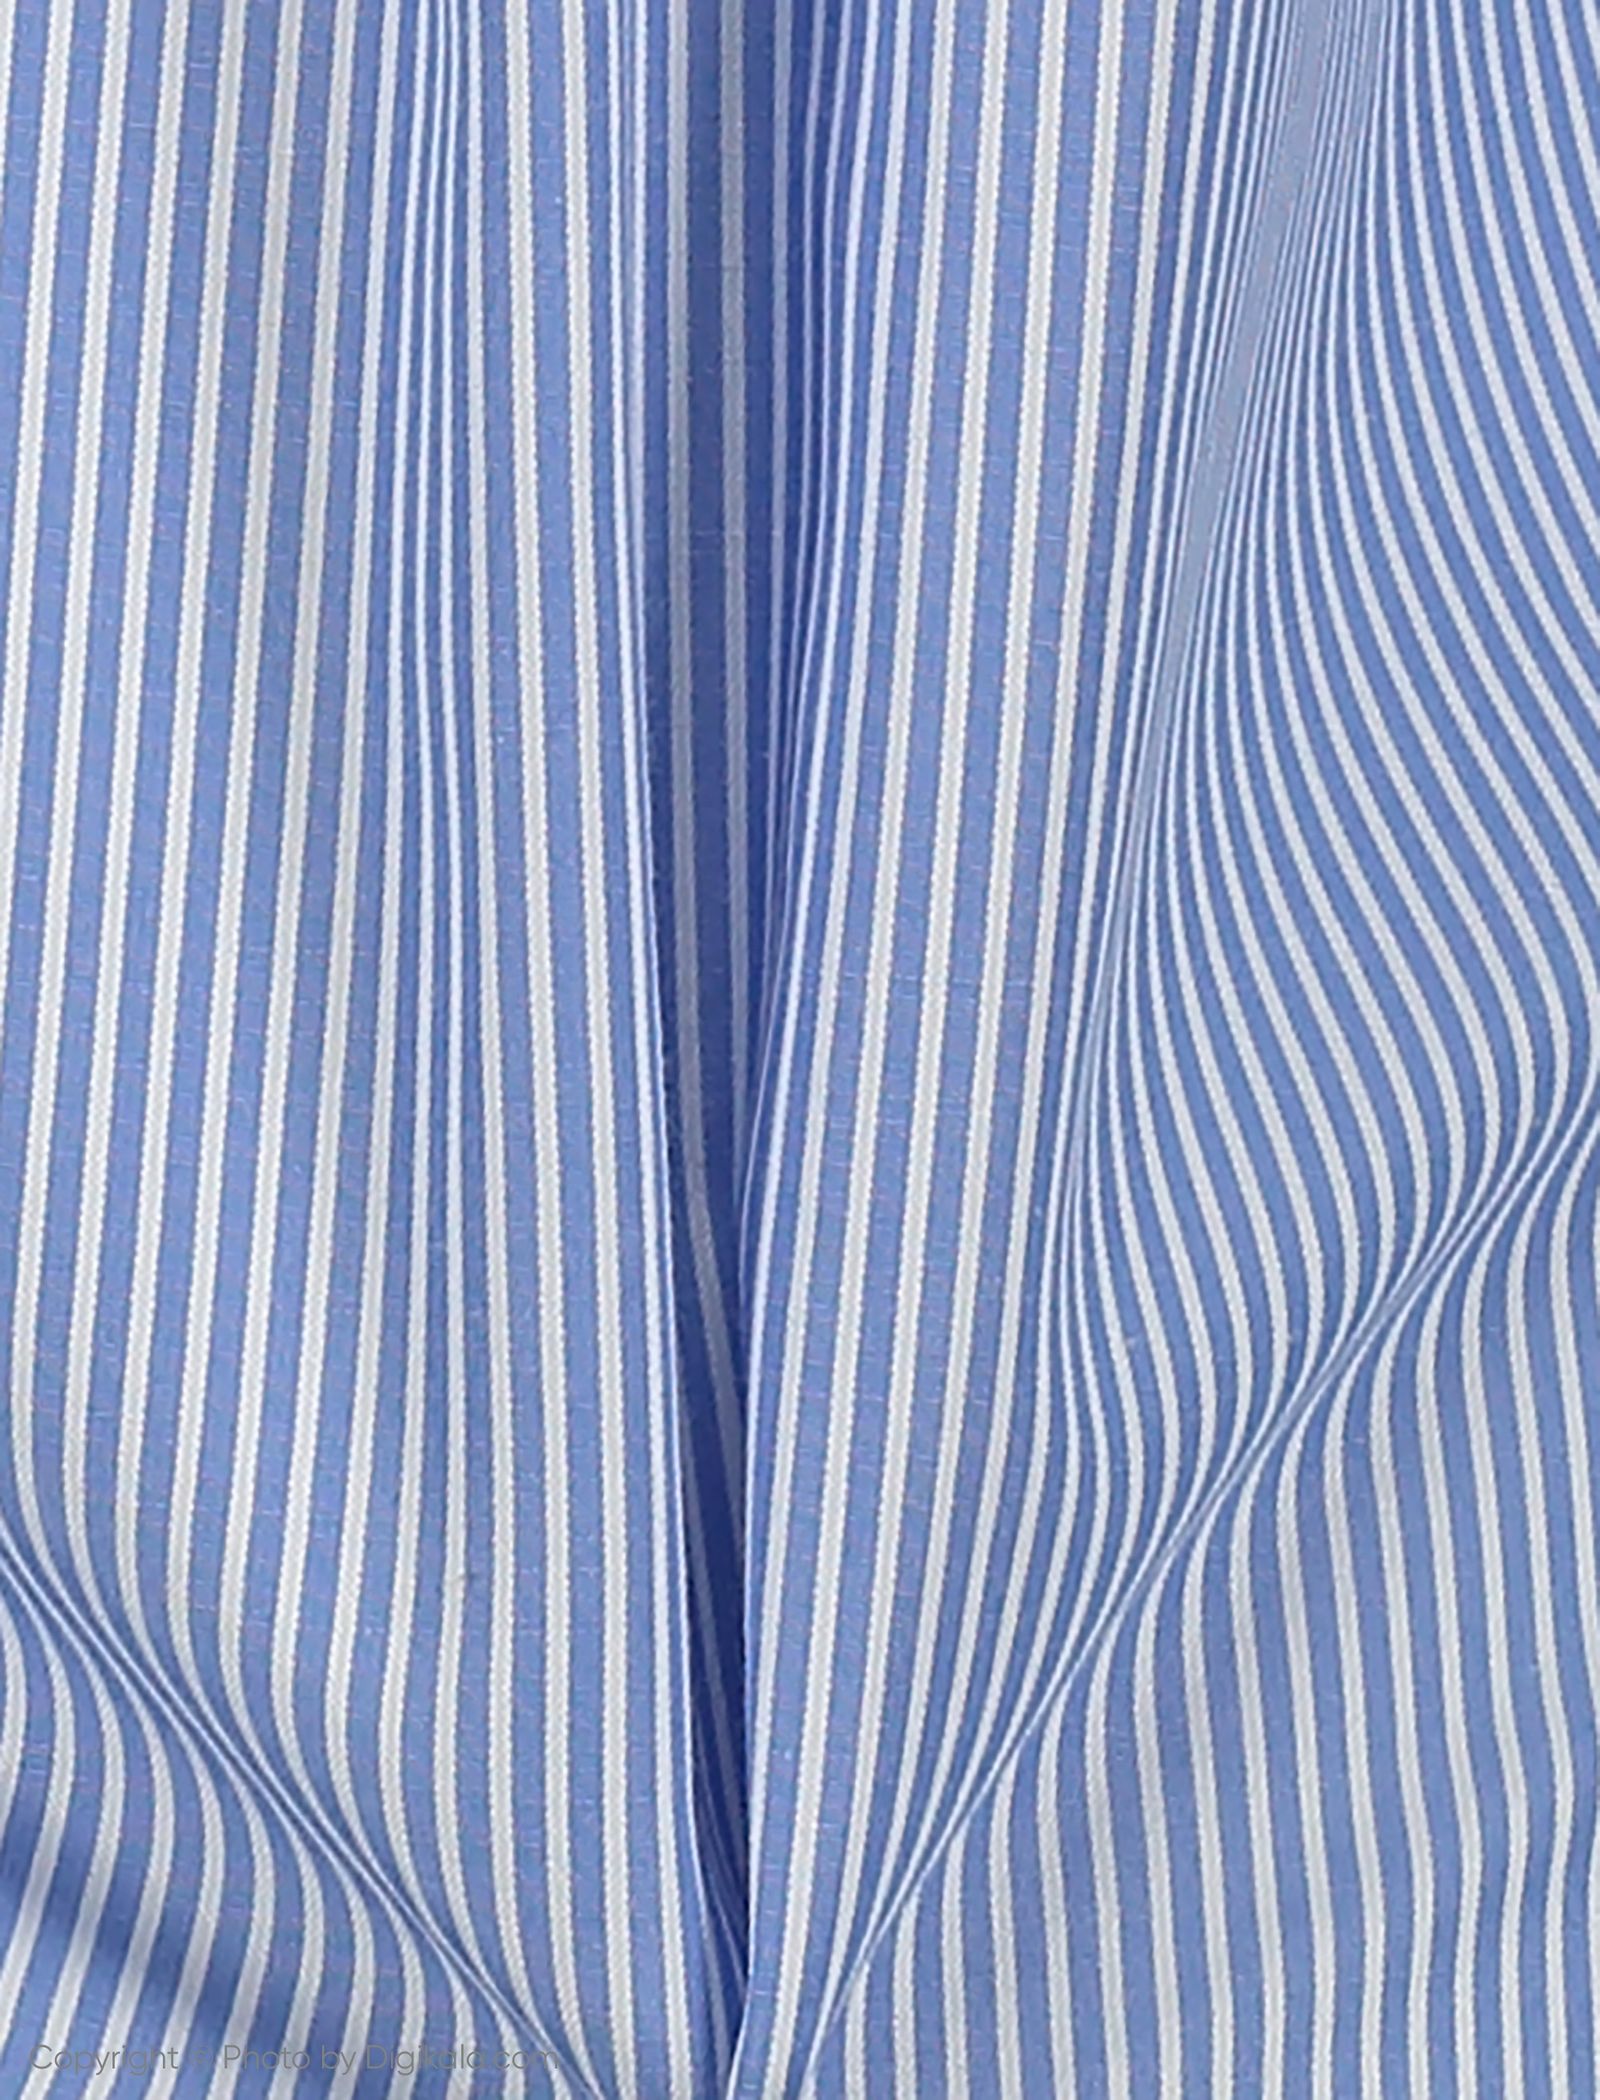 شومیز زنانه اسپرینگ فیلد مدل 6793916-MARINE BLUE - آبی سفید - 5